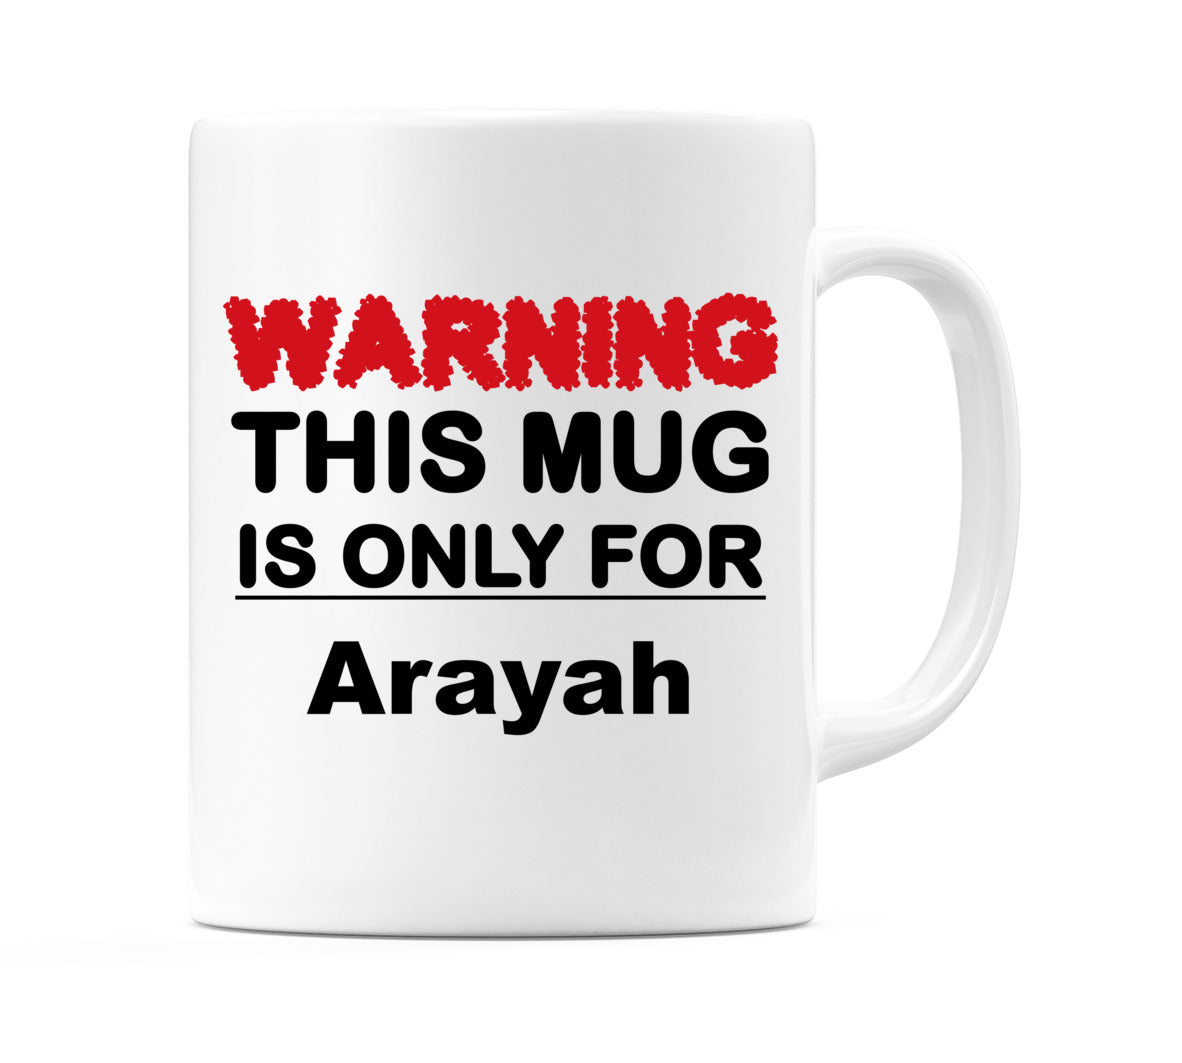 Warning This Mug is ONLY for Arayah Mug